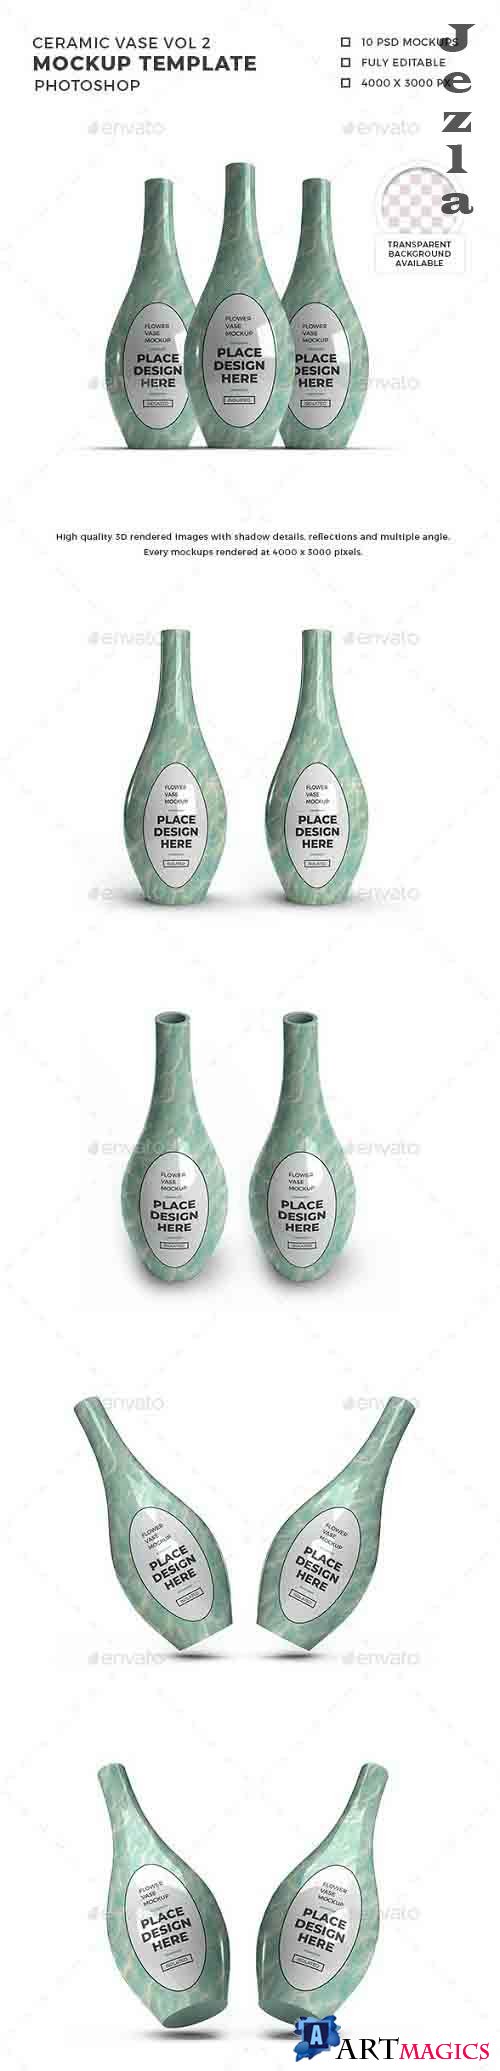 Ceramic Vase 3D Mockup Template Vol 2 - 32458681